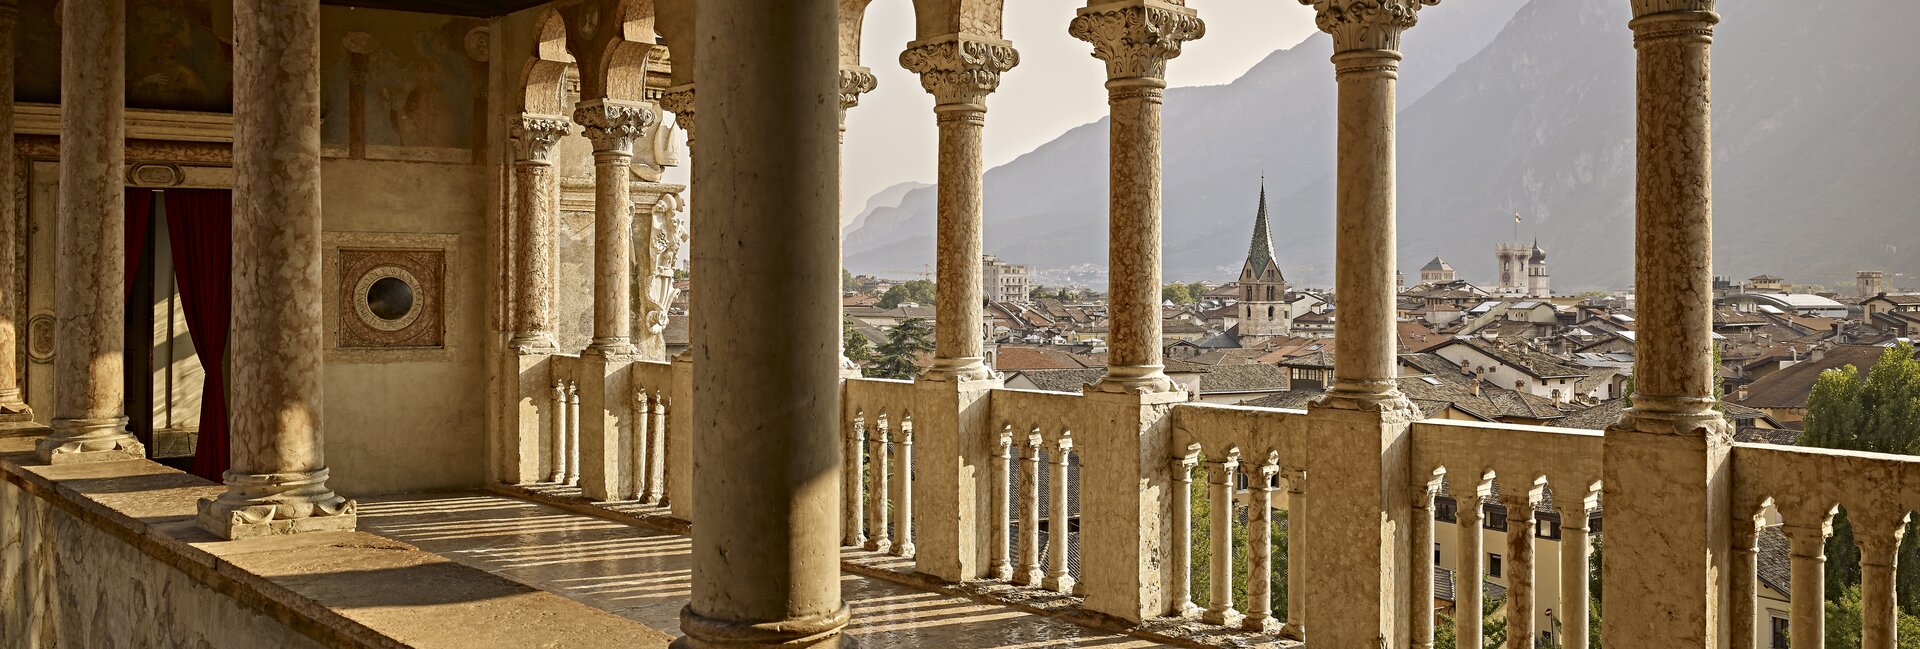 Trento, een bezoek brengen aan Castello del Buonconsiglio 